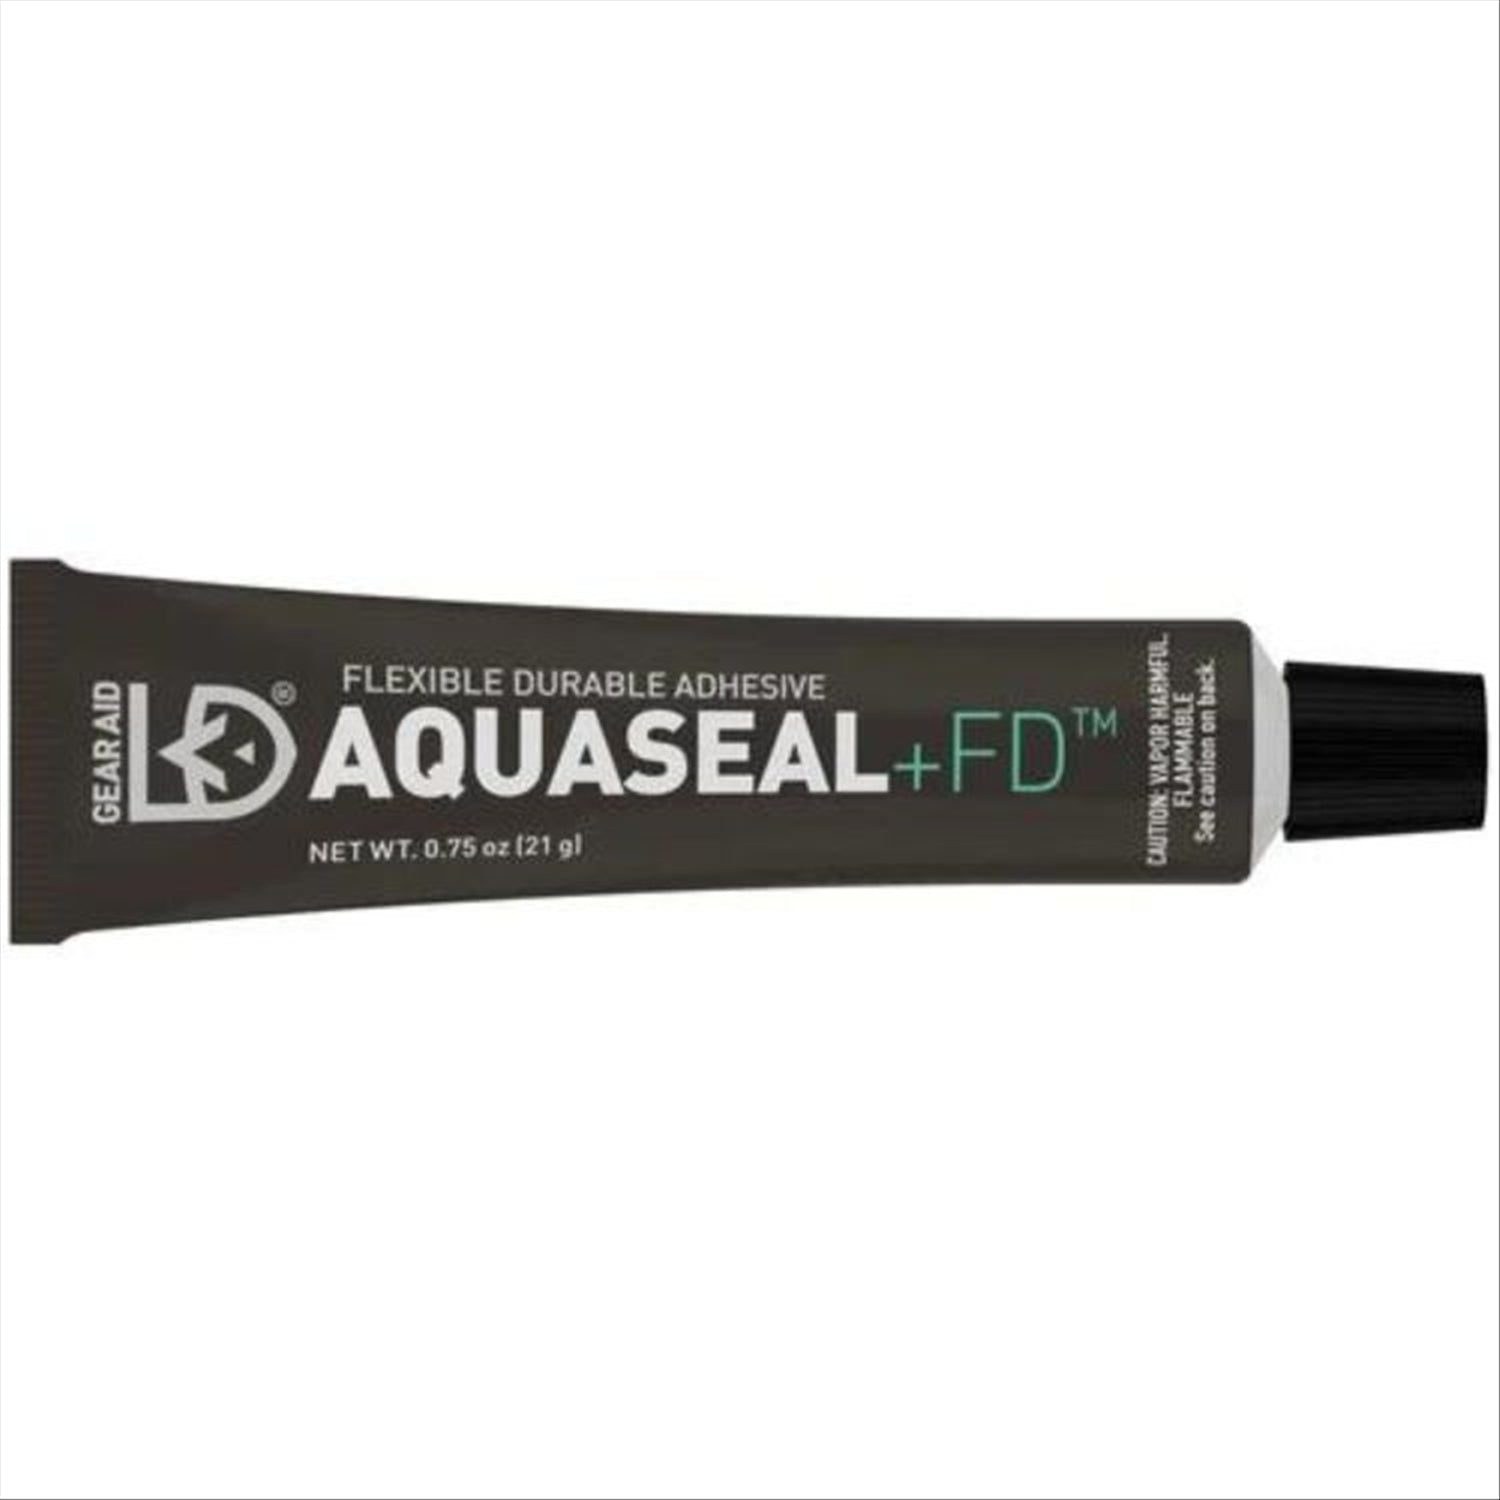 Gear Aid Aquaseal + FD Repair Adhesive